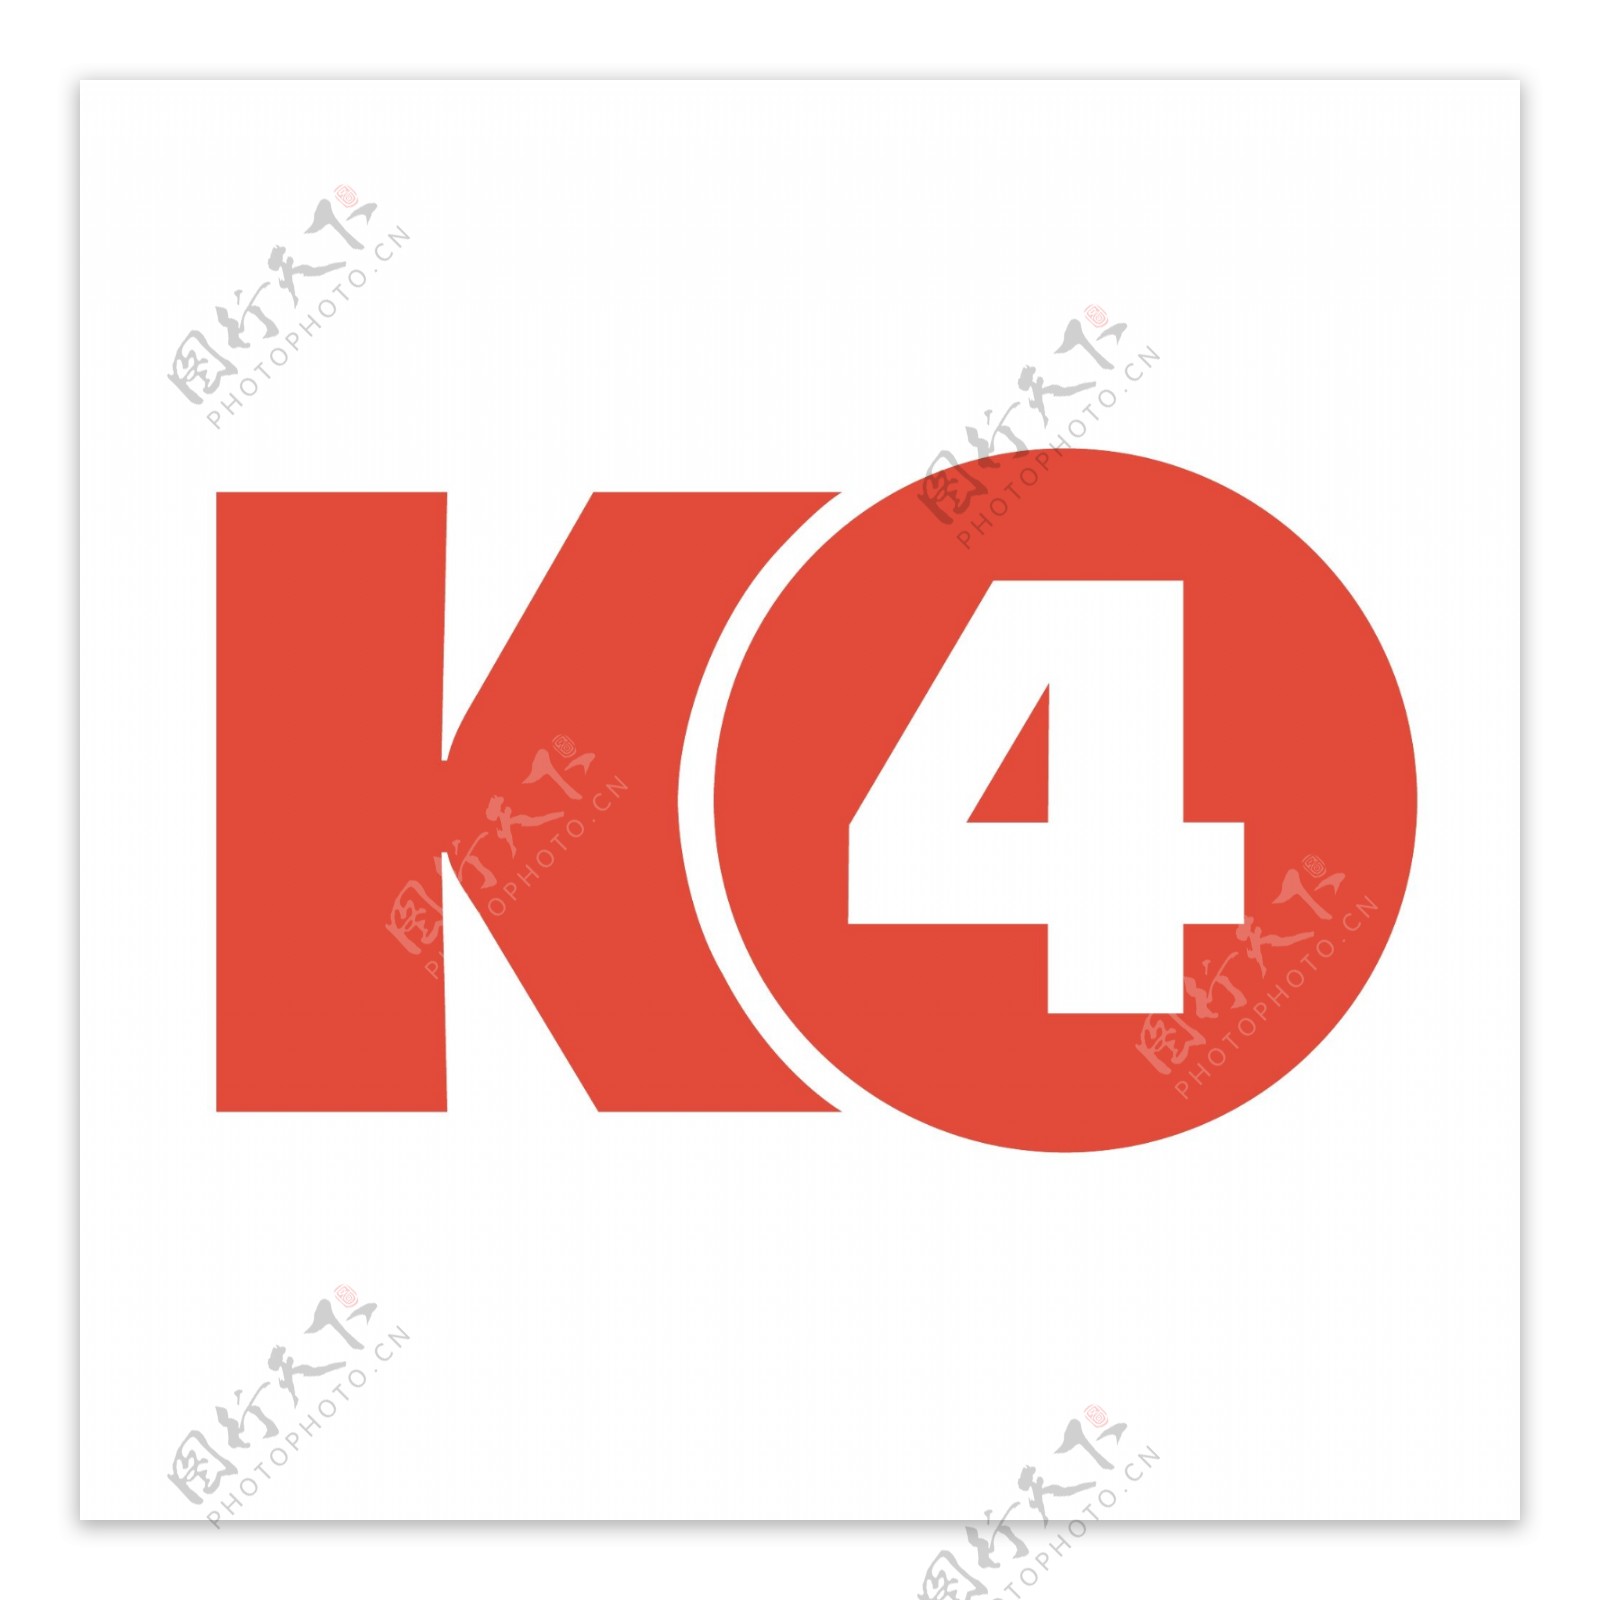 K4